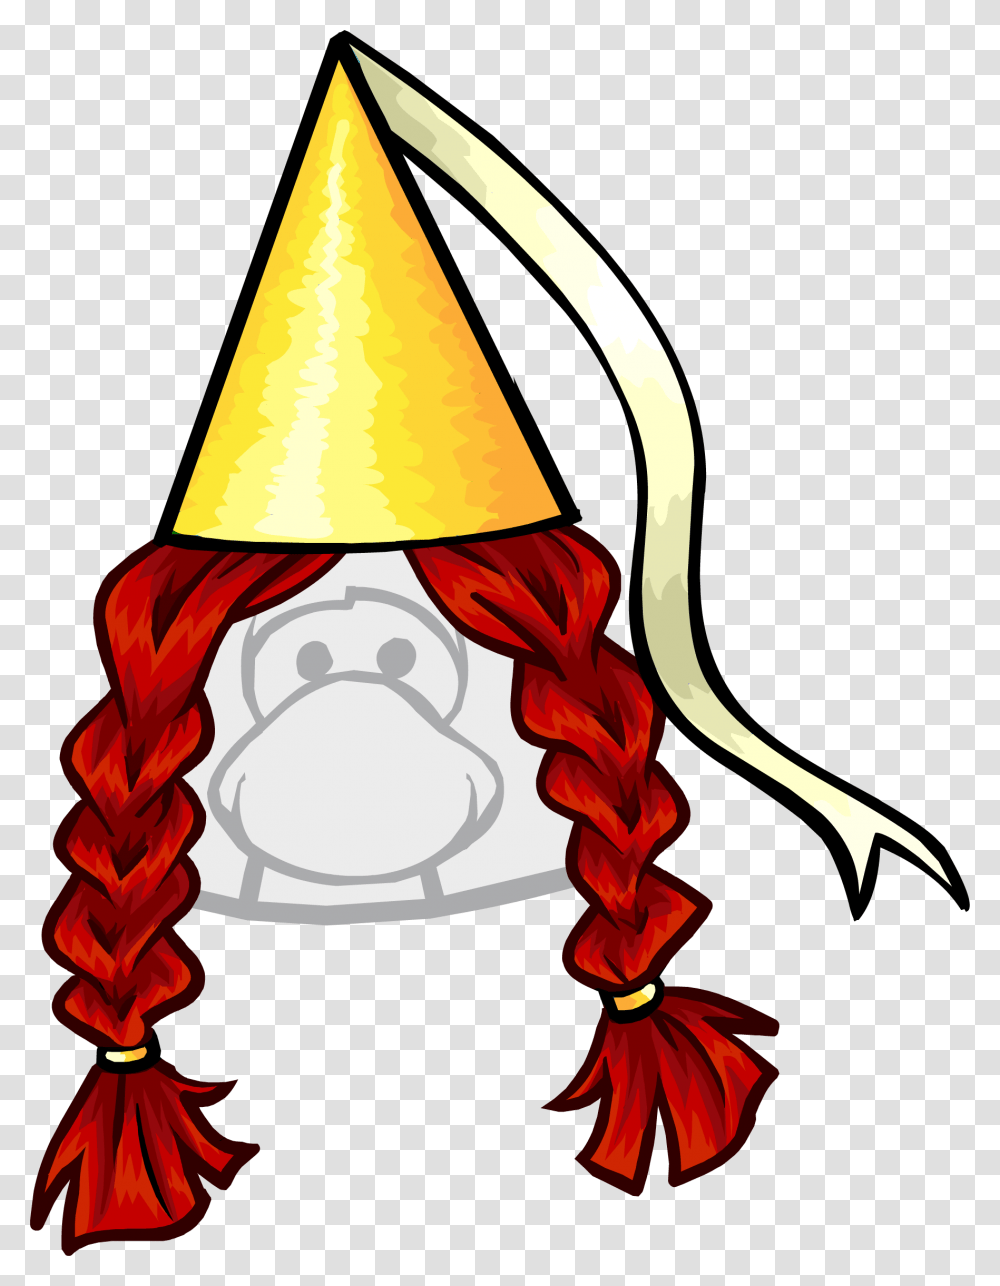 Gold Princess Hat Clipart Club Penguin Princess, Apparel, Lamp, Party Hat Transparent Png